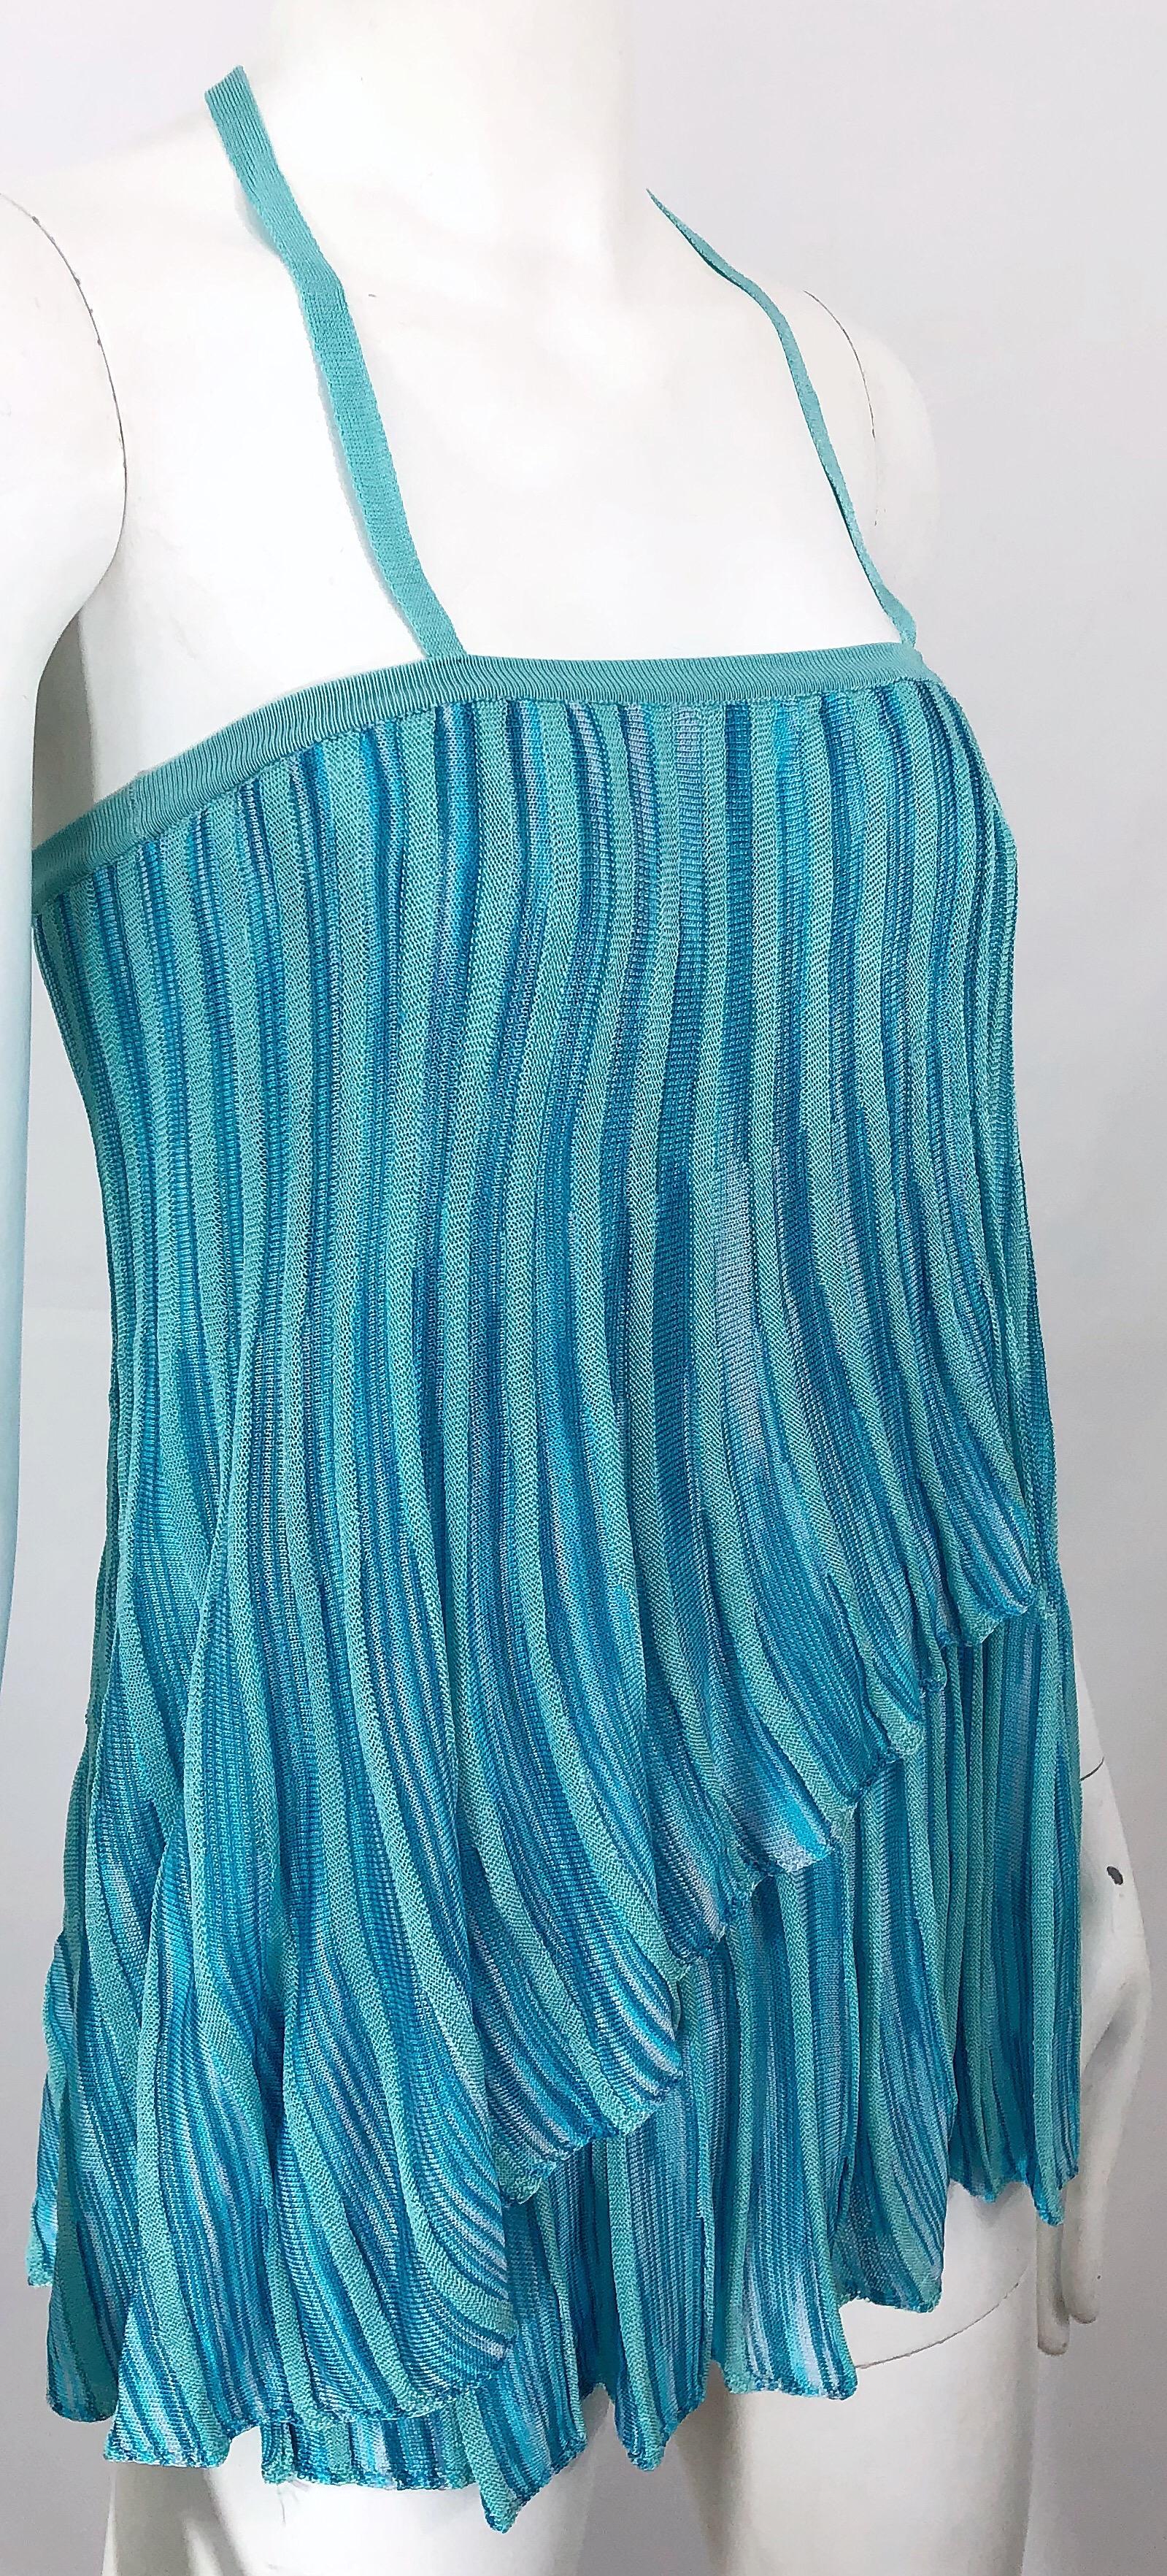 Vintage Missoni 1990s Turquoise Teal Blue Knit Vintage 90s Halter Top OR Skirt For Sale 8